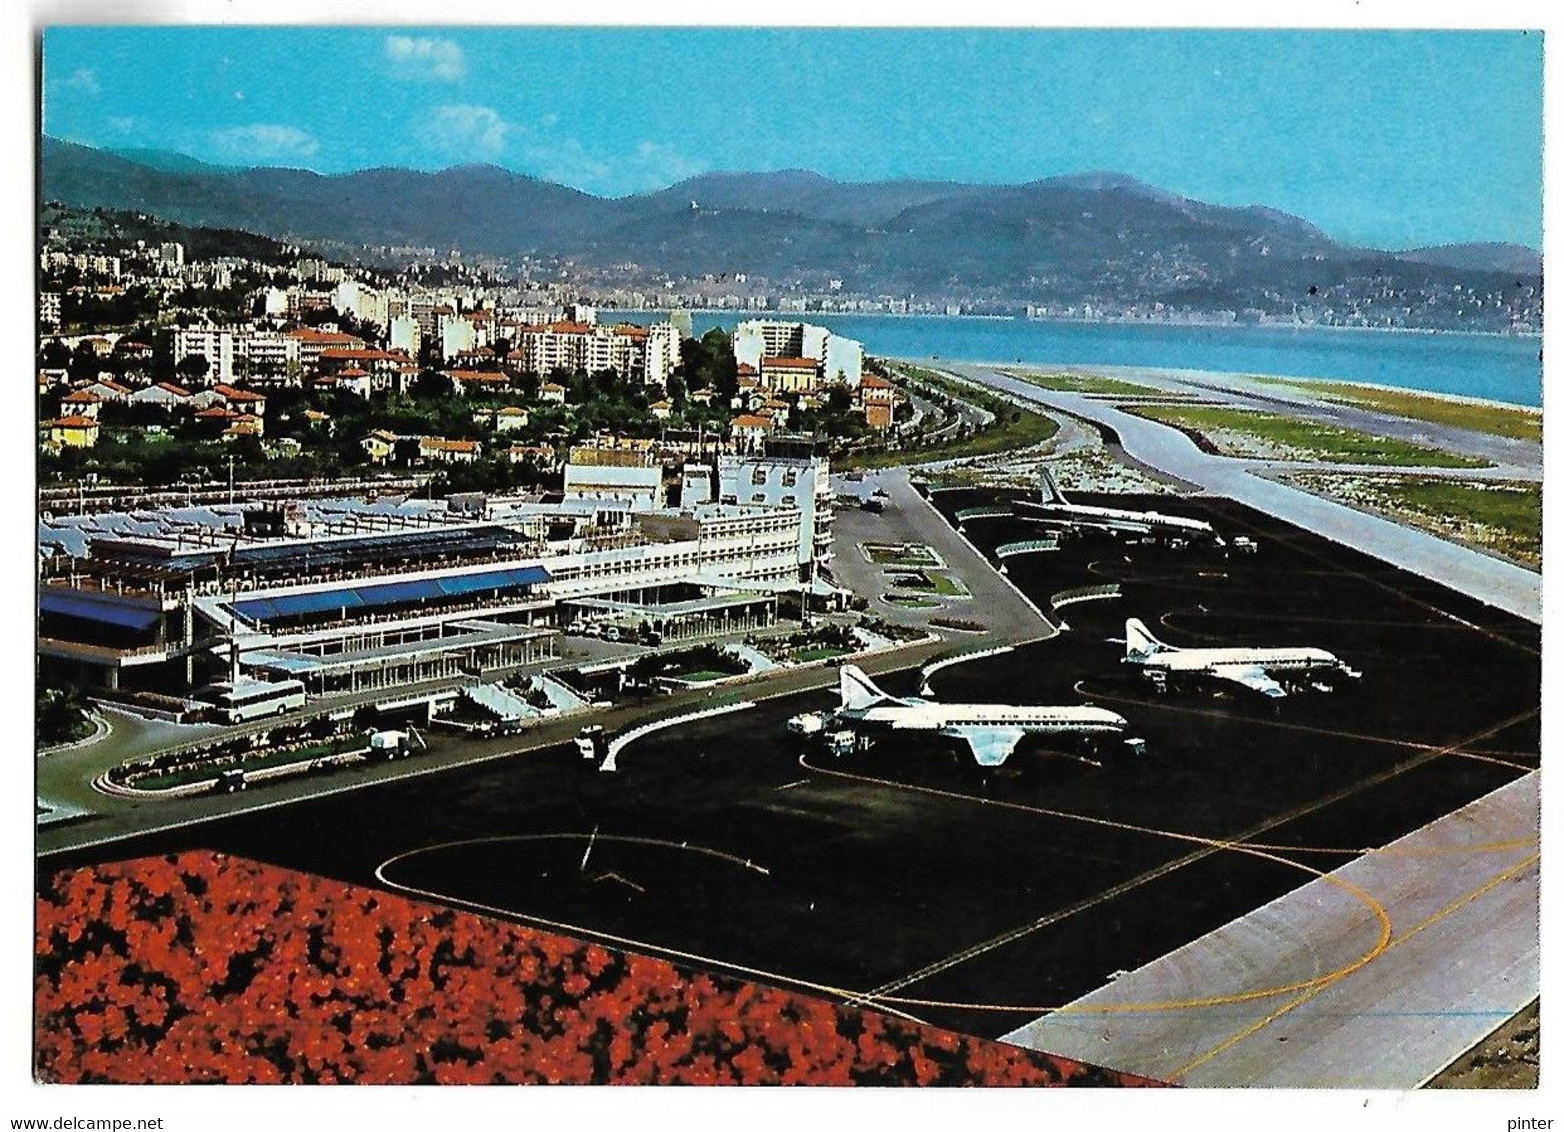 NICE - Vue Aérienne De L'Aéroport Nice-Côte D'Azur - Aeronautica – Aeroporto